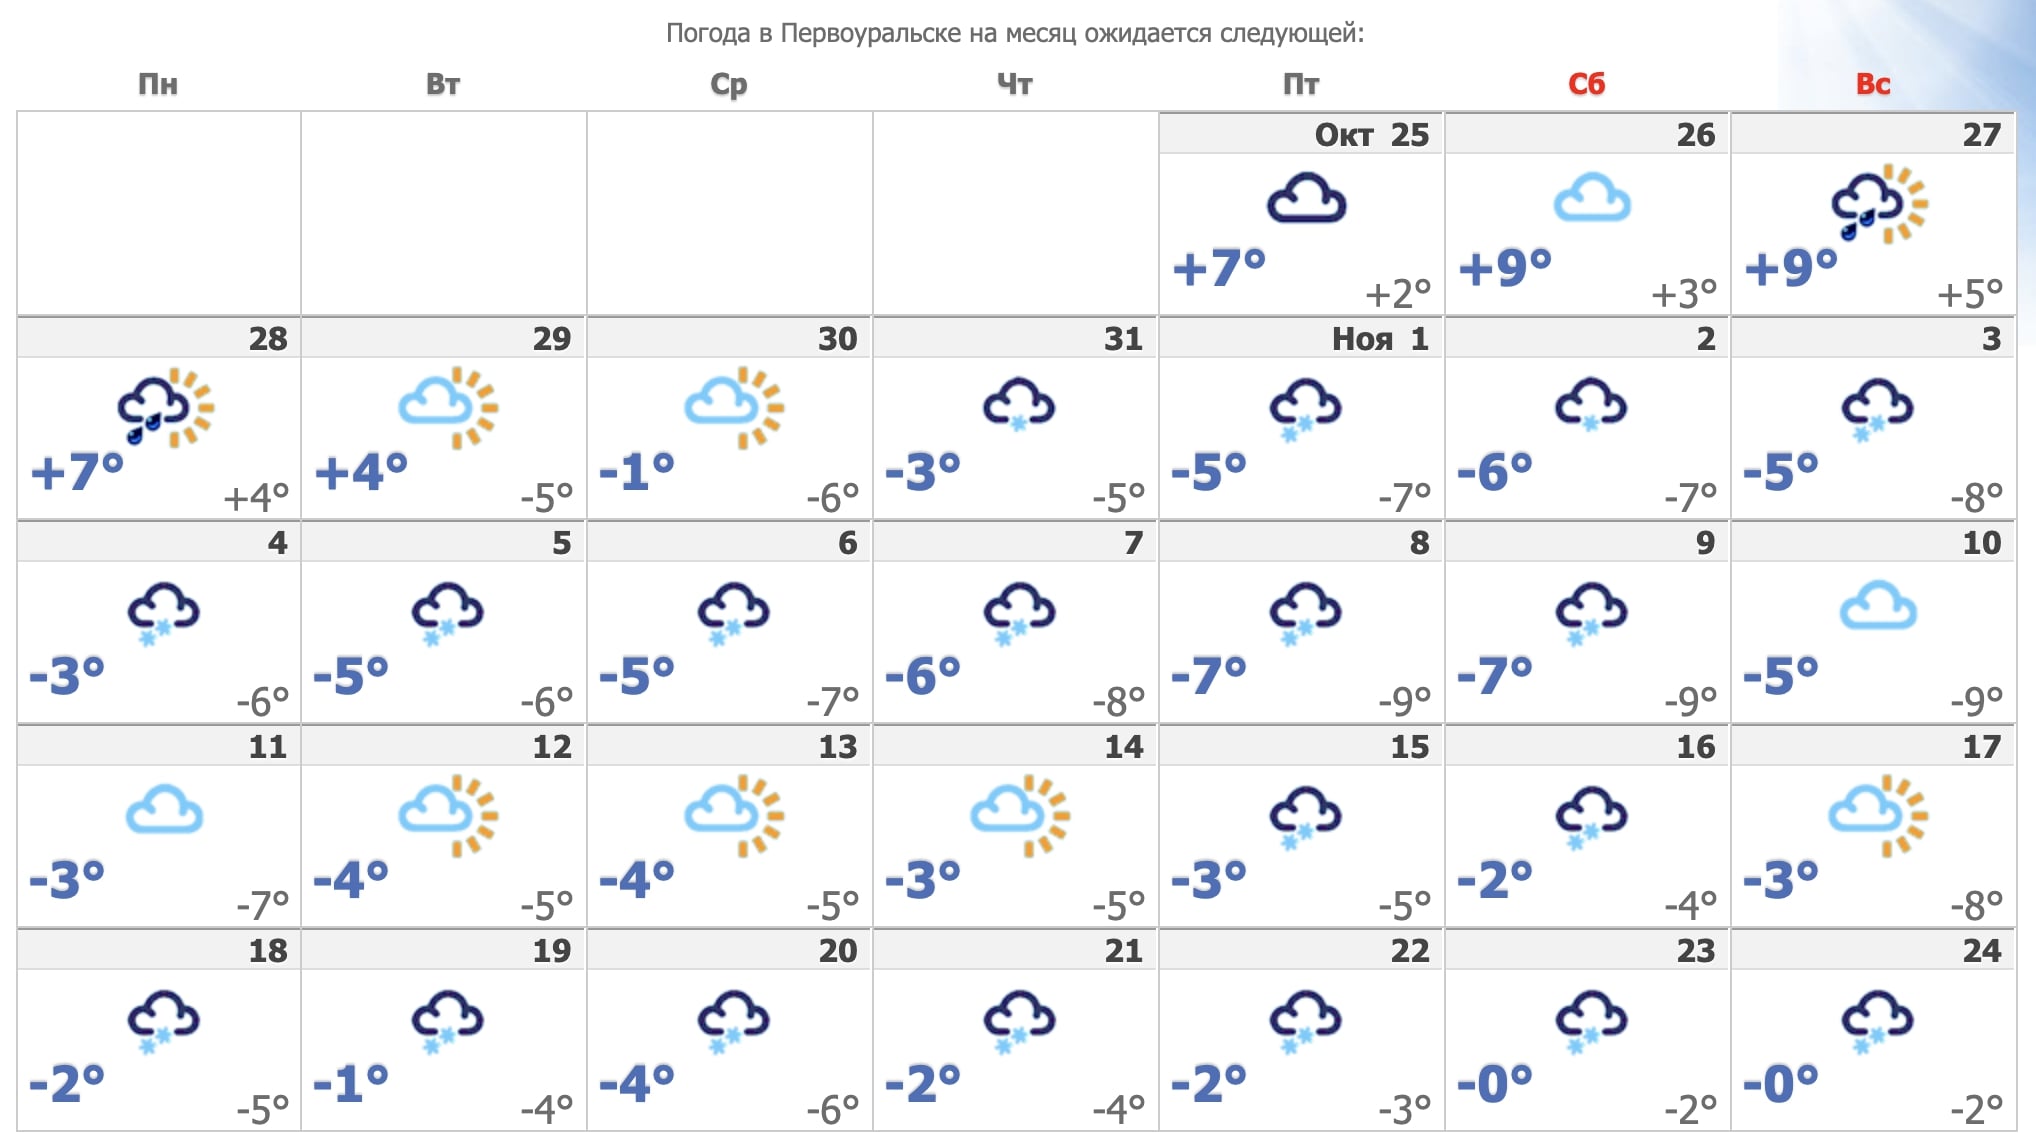 Ветреная и дождливая погода продержится в Первоуральске до конца недели